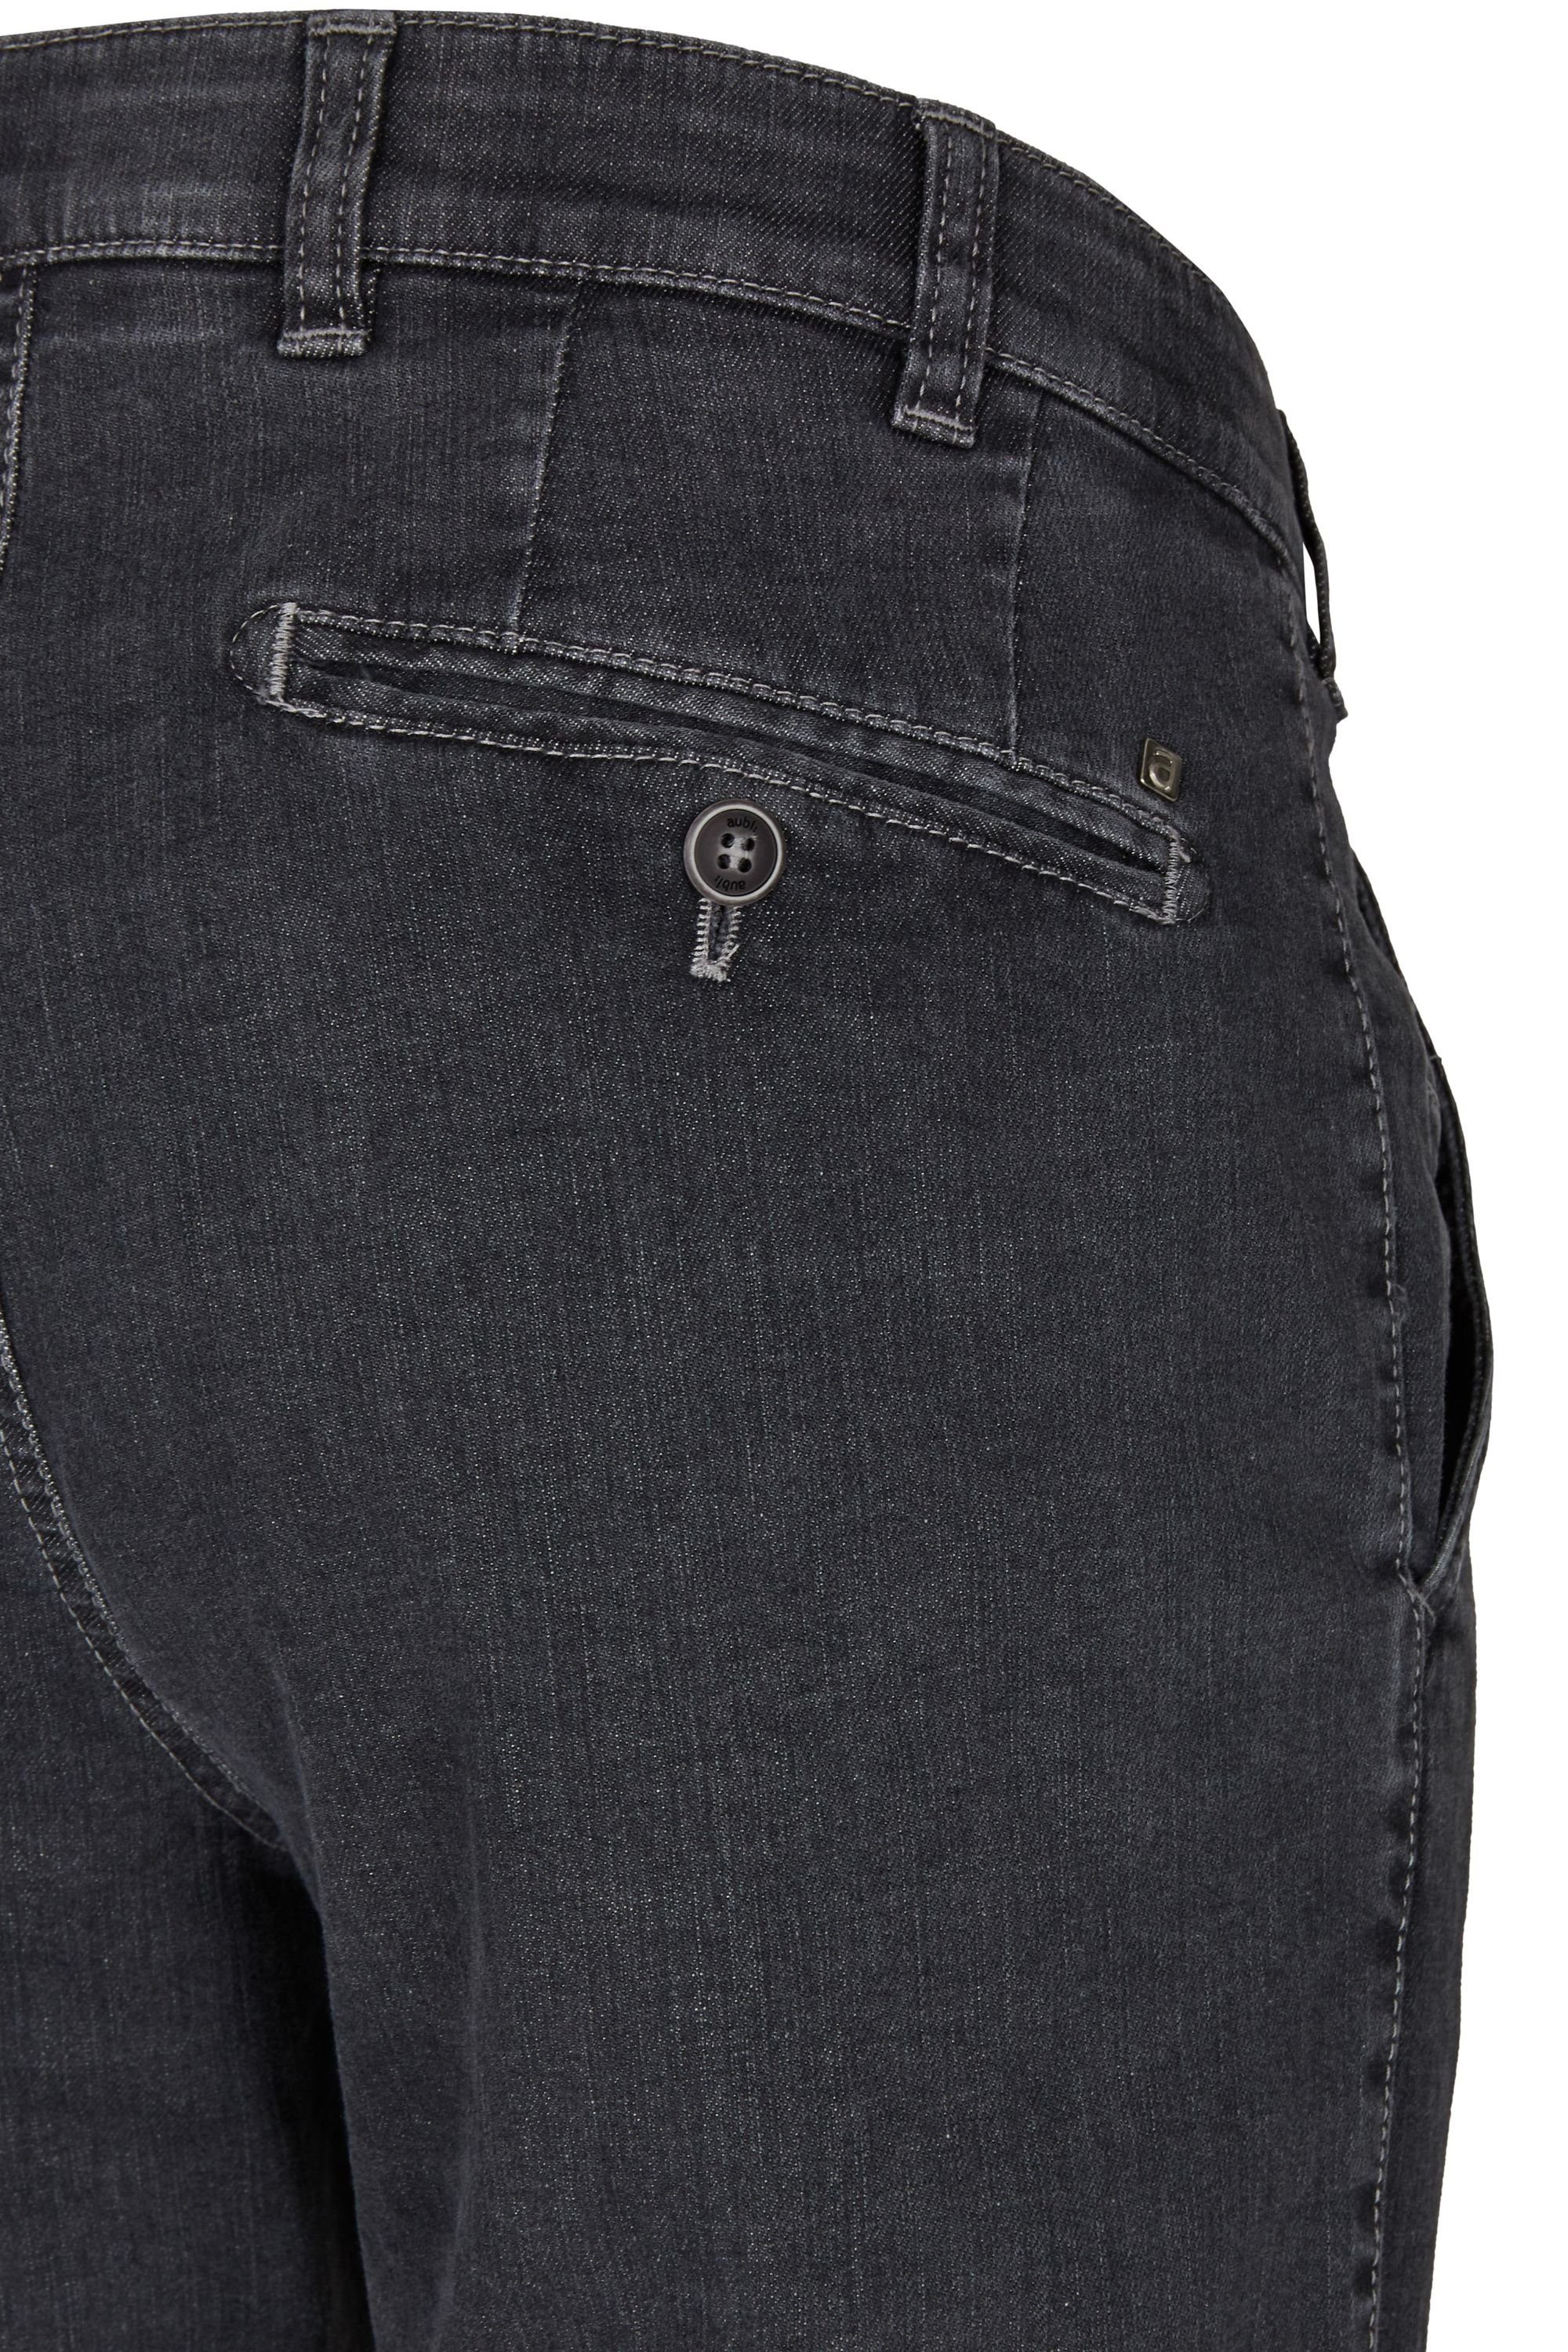 aubi: Stretch aubi Baumwolle Fit Flex 526 High Hose aus (51) Jeans Jeans Perfect Modell Herren Bequeme grey